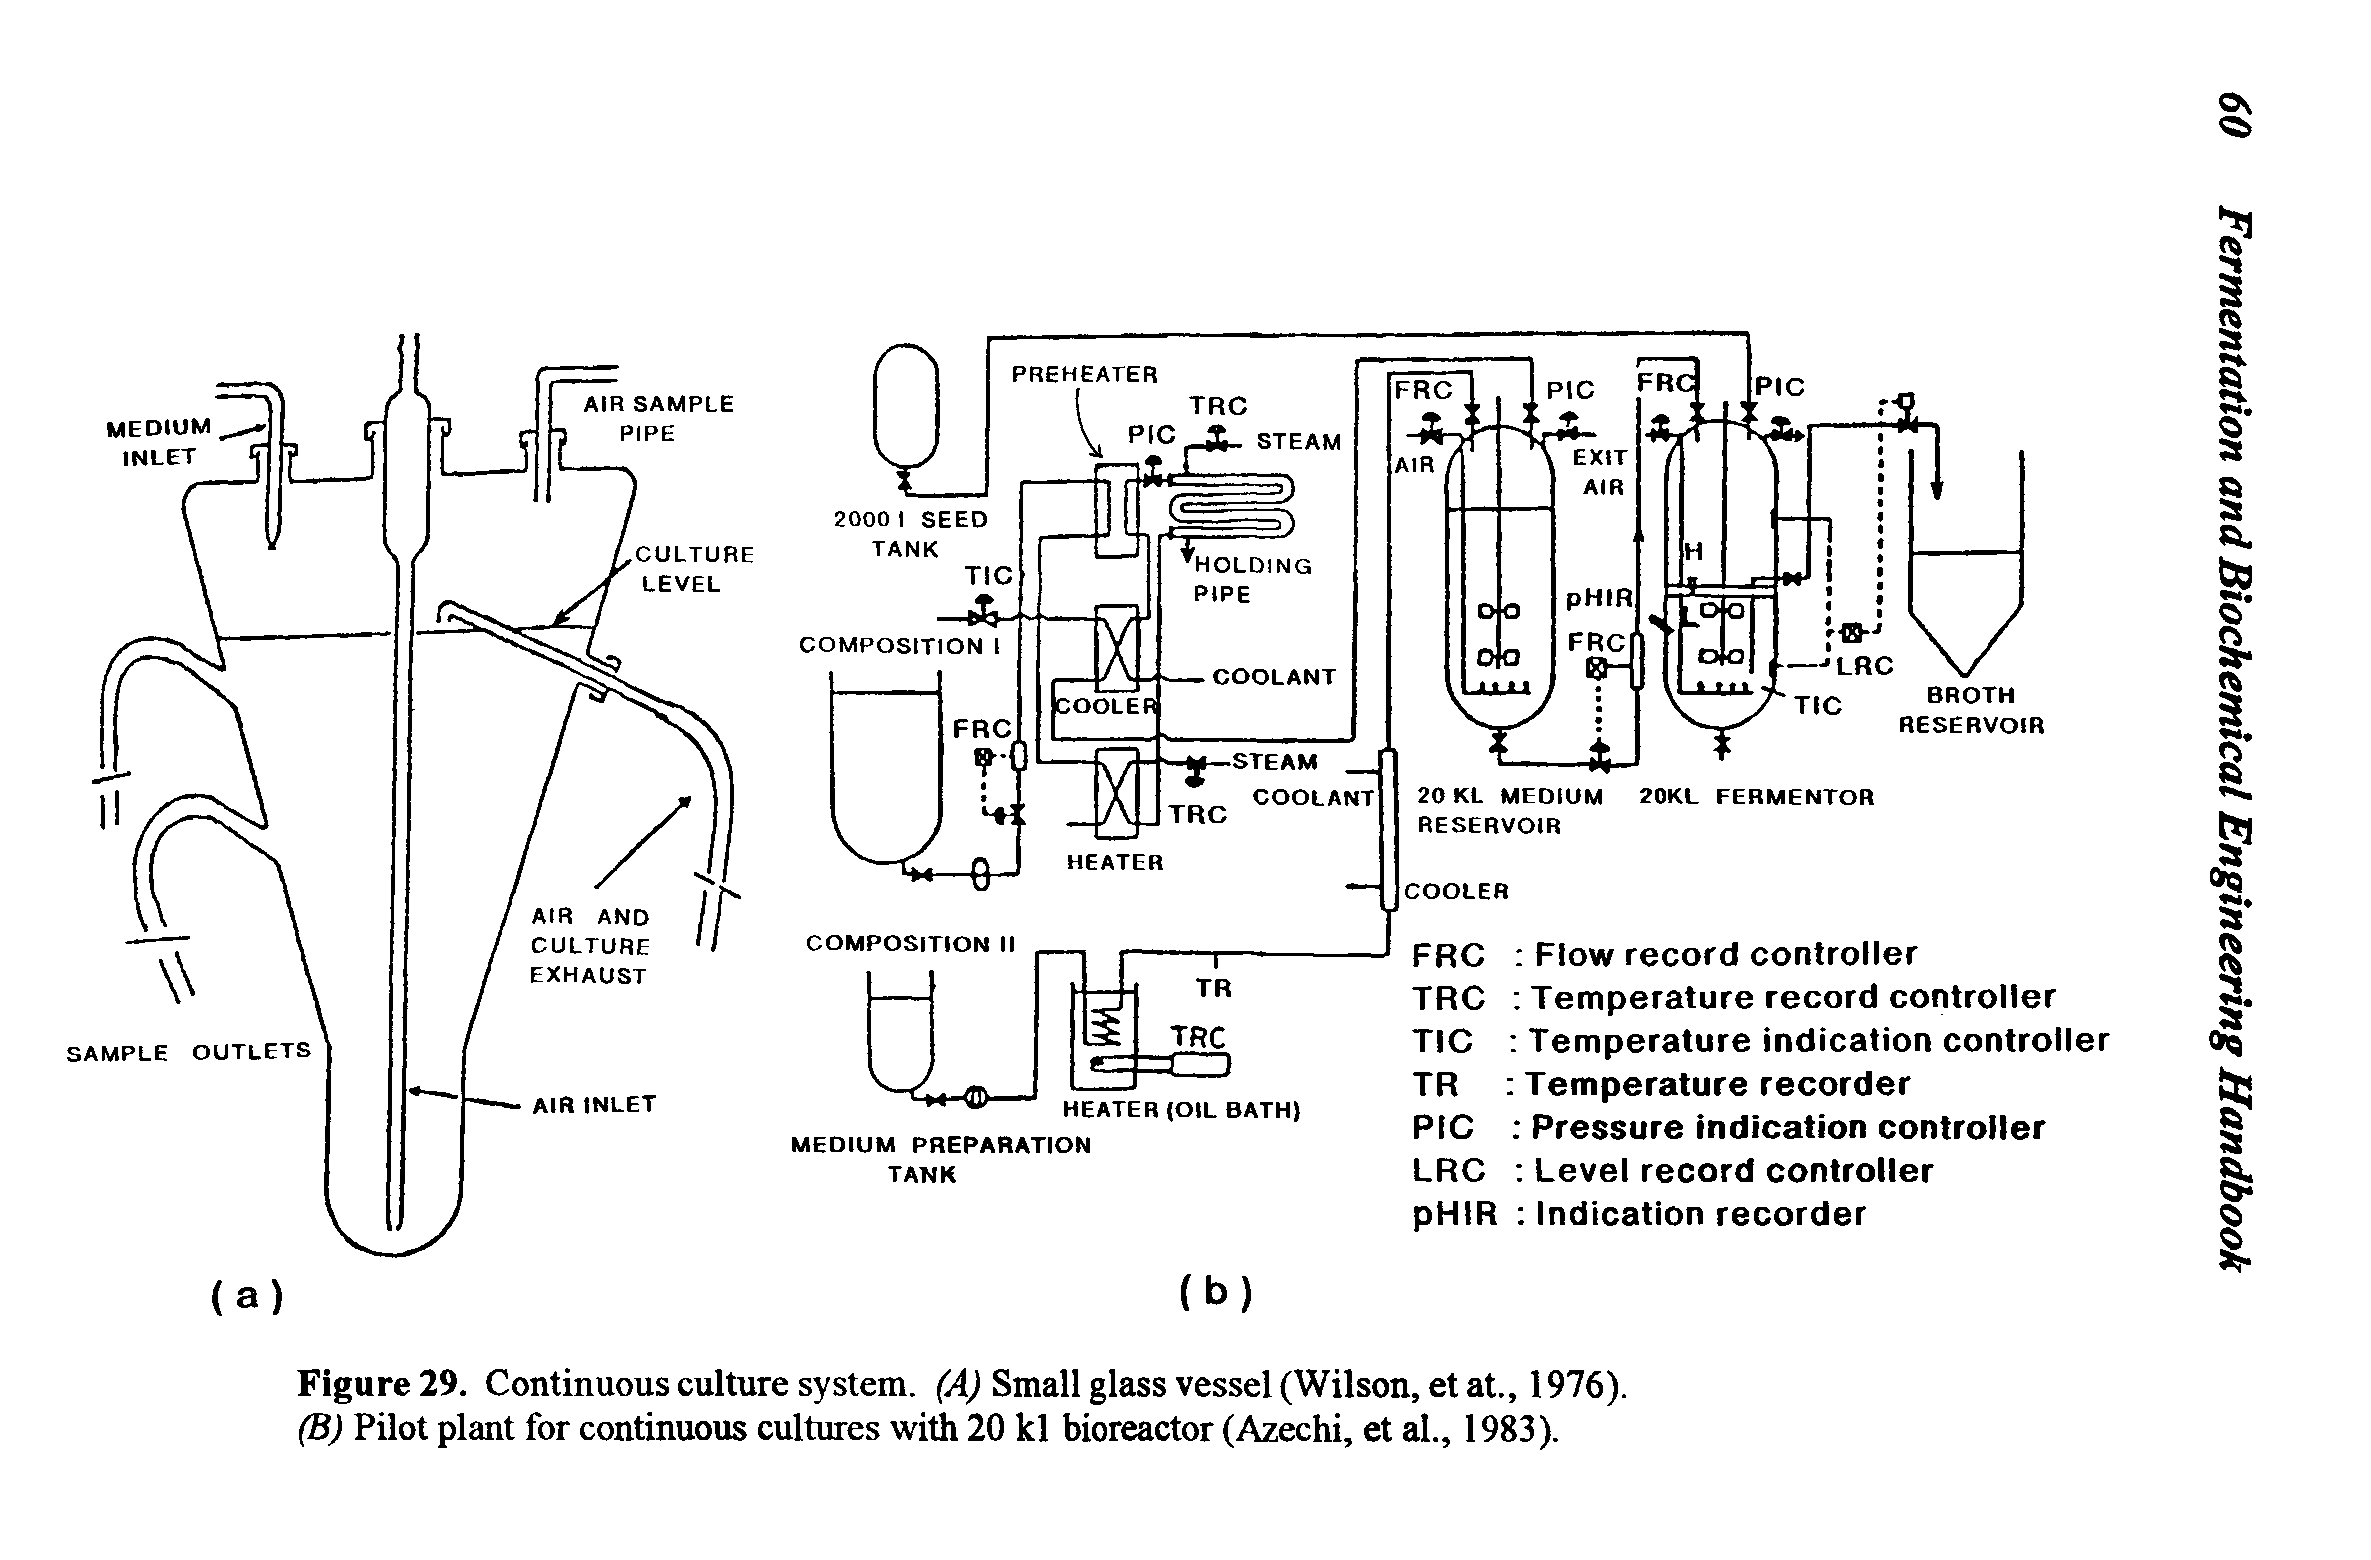 Figure 29. Continuous culture system. (A) Small glass vessel (Wilson, et at., 1976). (B) Pilot plant for continuous cultures with 20 kl bioreactor (Azechi, et al., 1983).